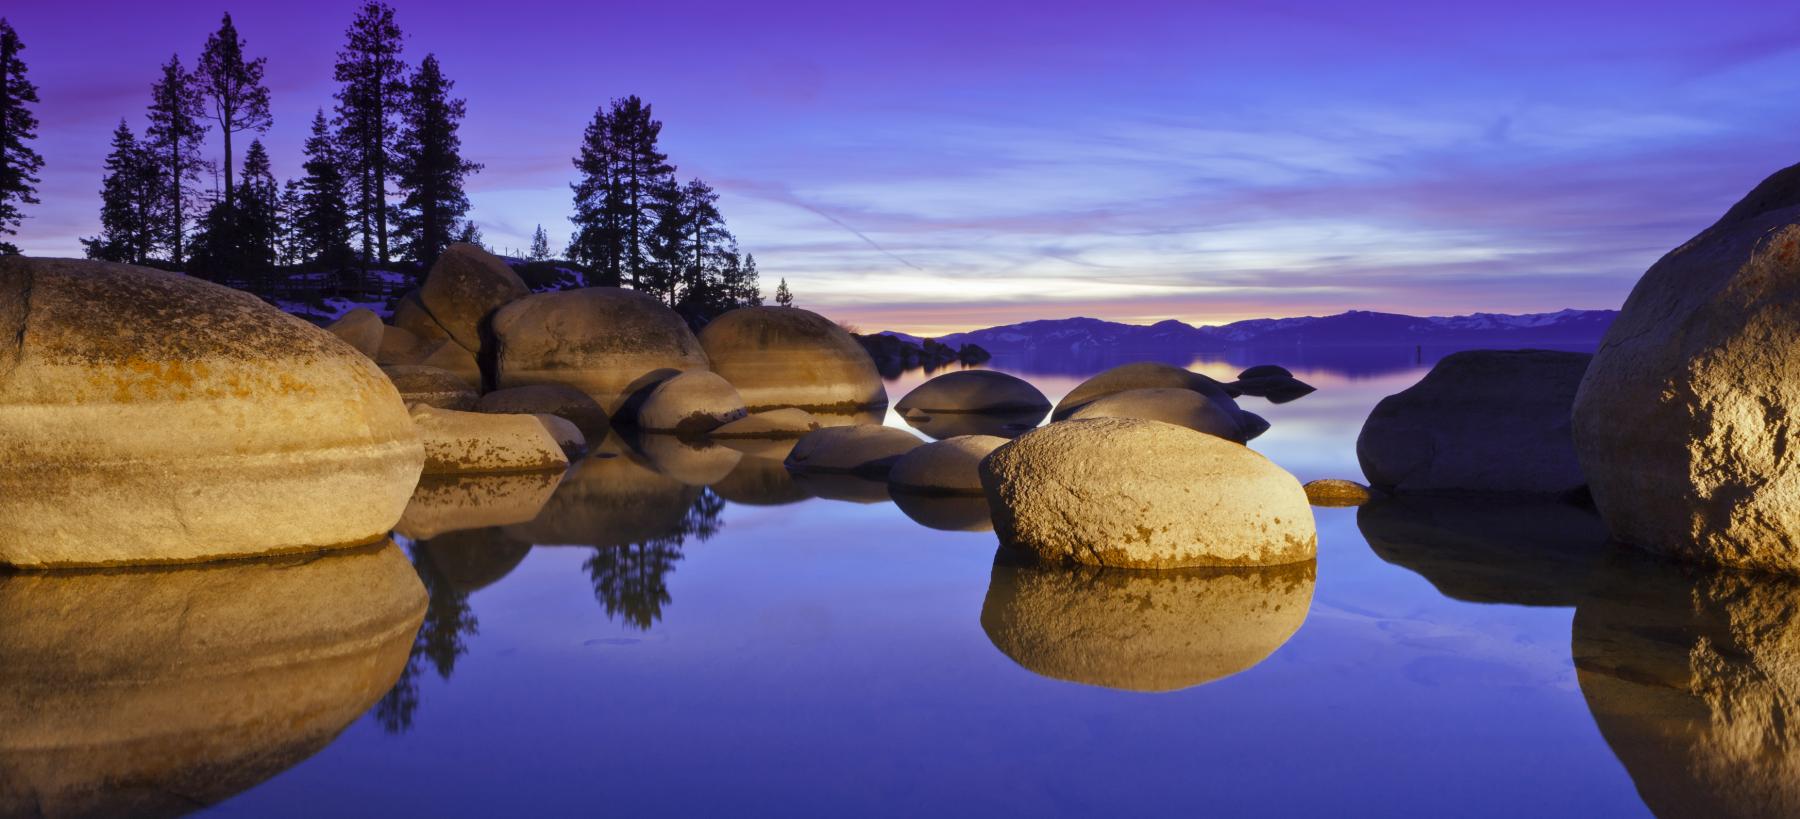 Rocks in Lake Tahoe at sunset